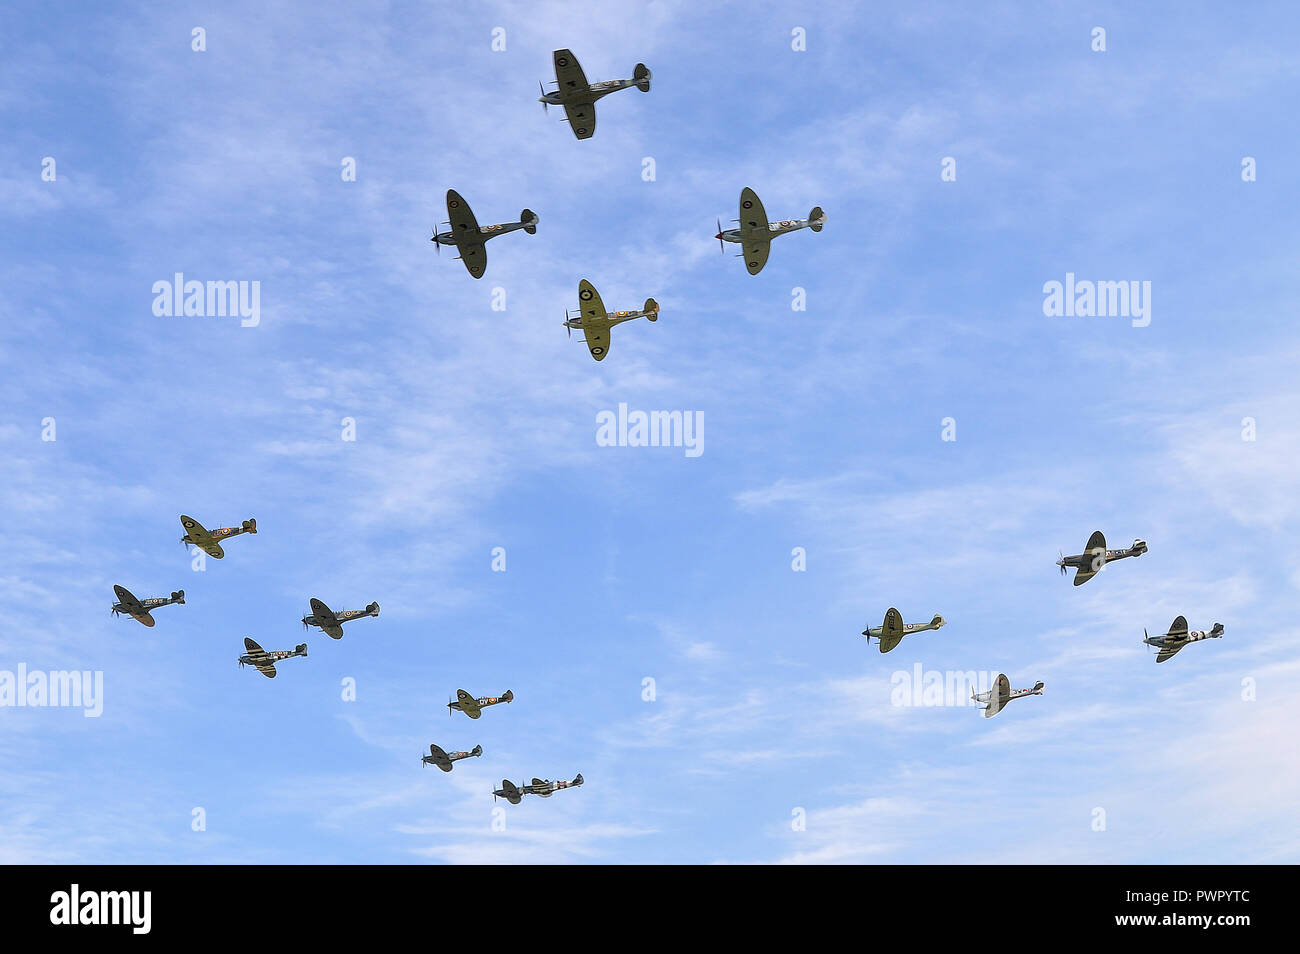 L'escadron, vol, groupe des Spitfires. Seconde Guerre mondiale les avions de chasse Supermarine Spitfire battant ensemble. 15 Spitfire en formation dans le ciel bleu Banque D'Images